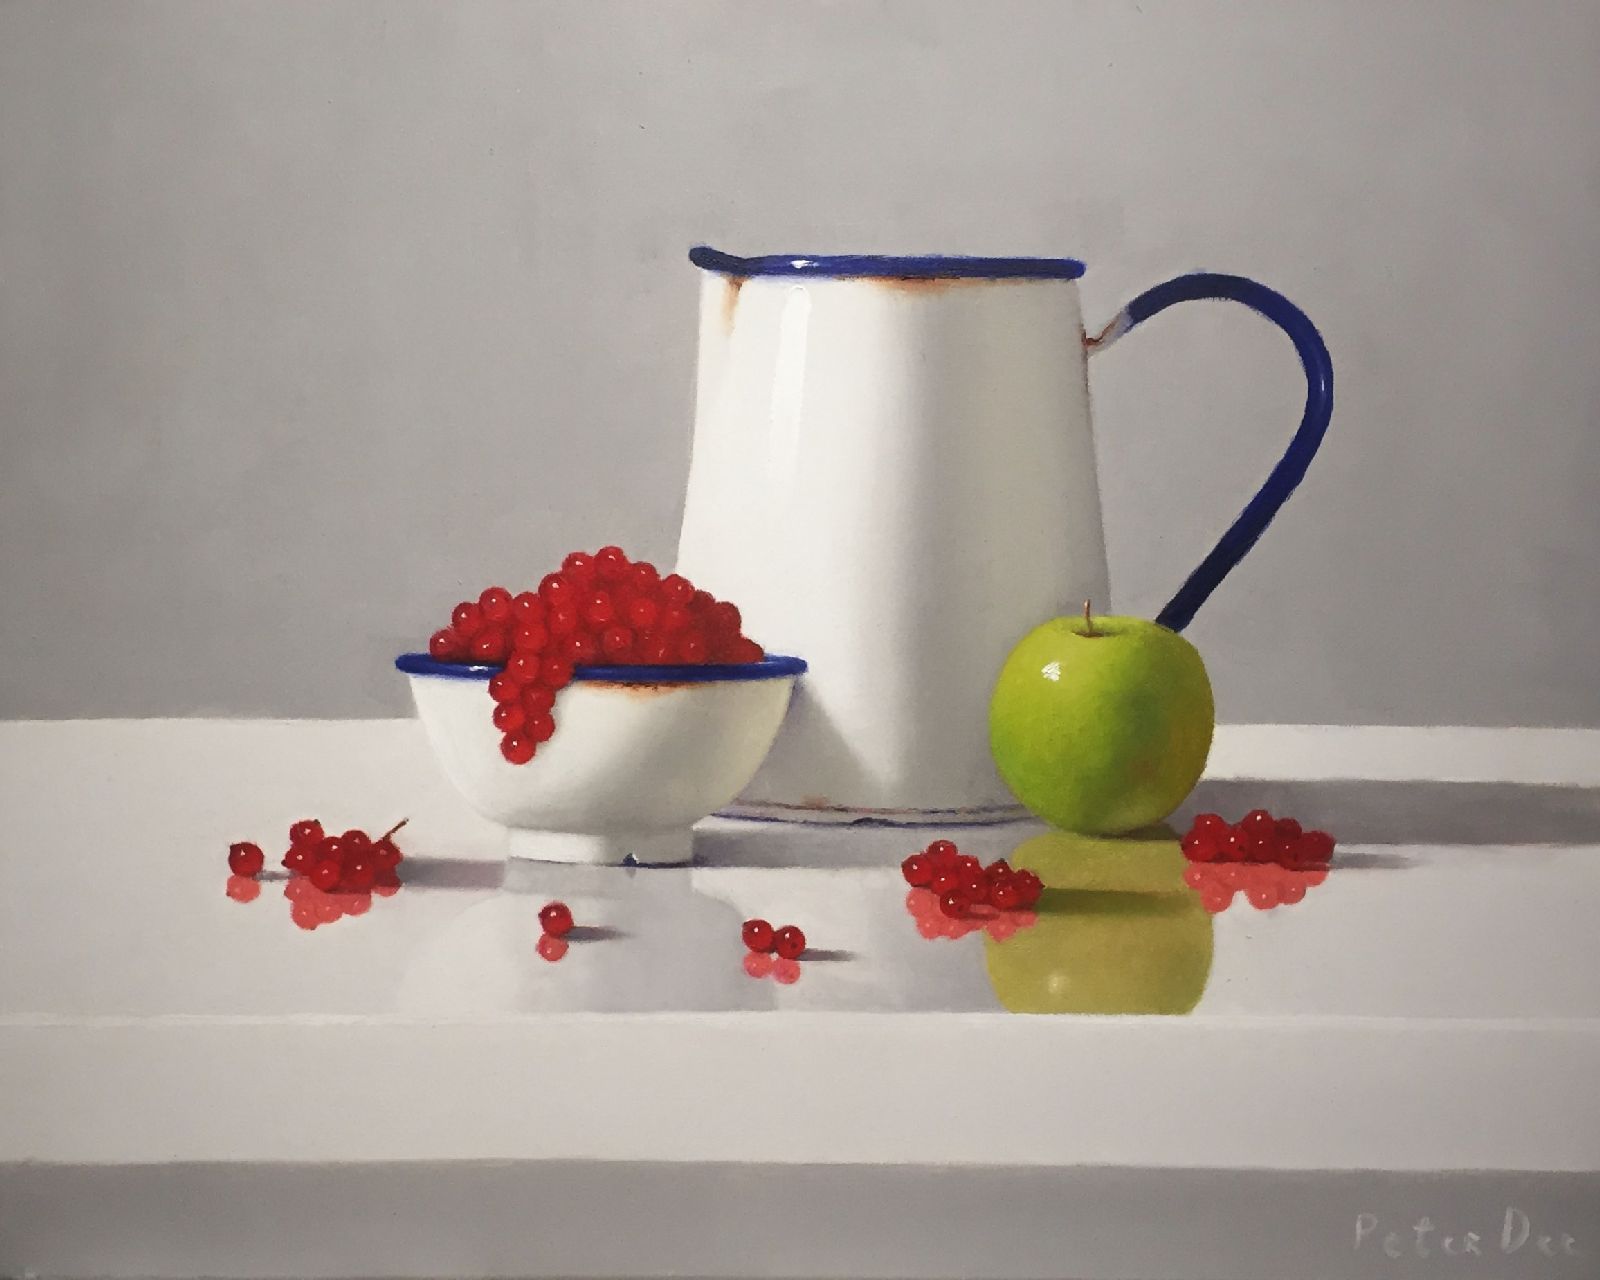 Vintage Enamelware with Fruit by Peter Dee